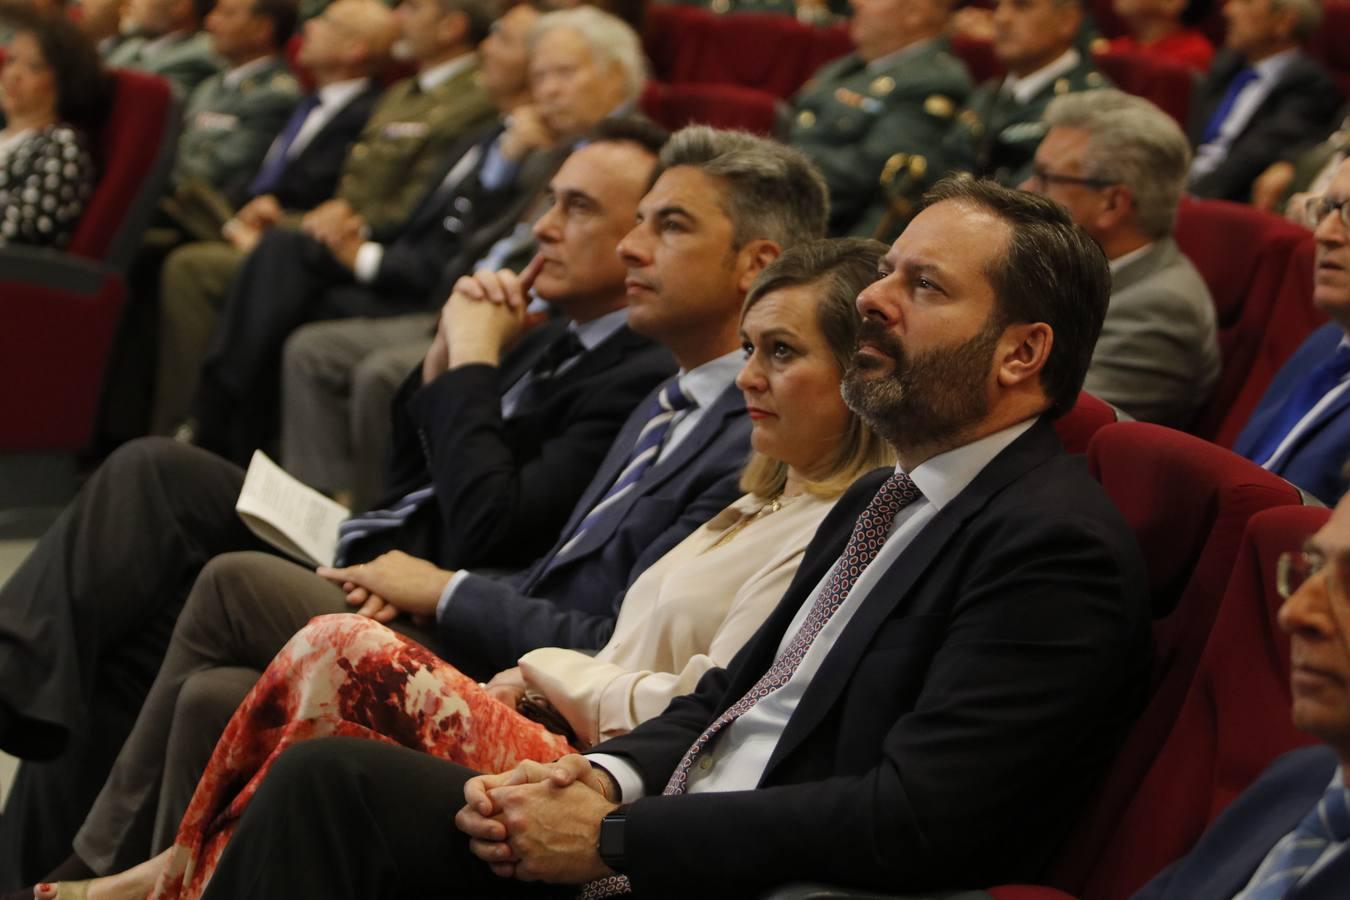 La celebración en Córdoba del 175 aniversario de la Guardia Civil, en imágenes